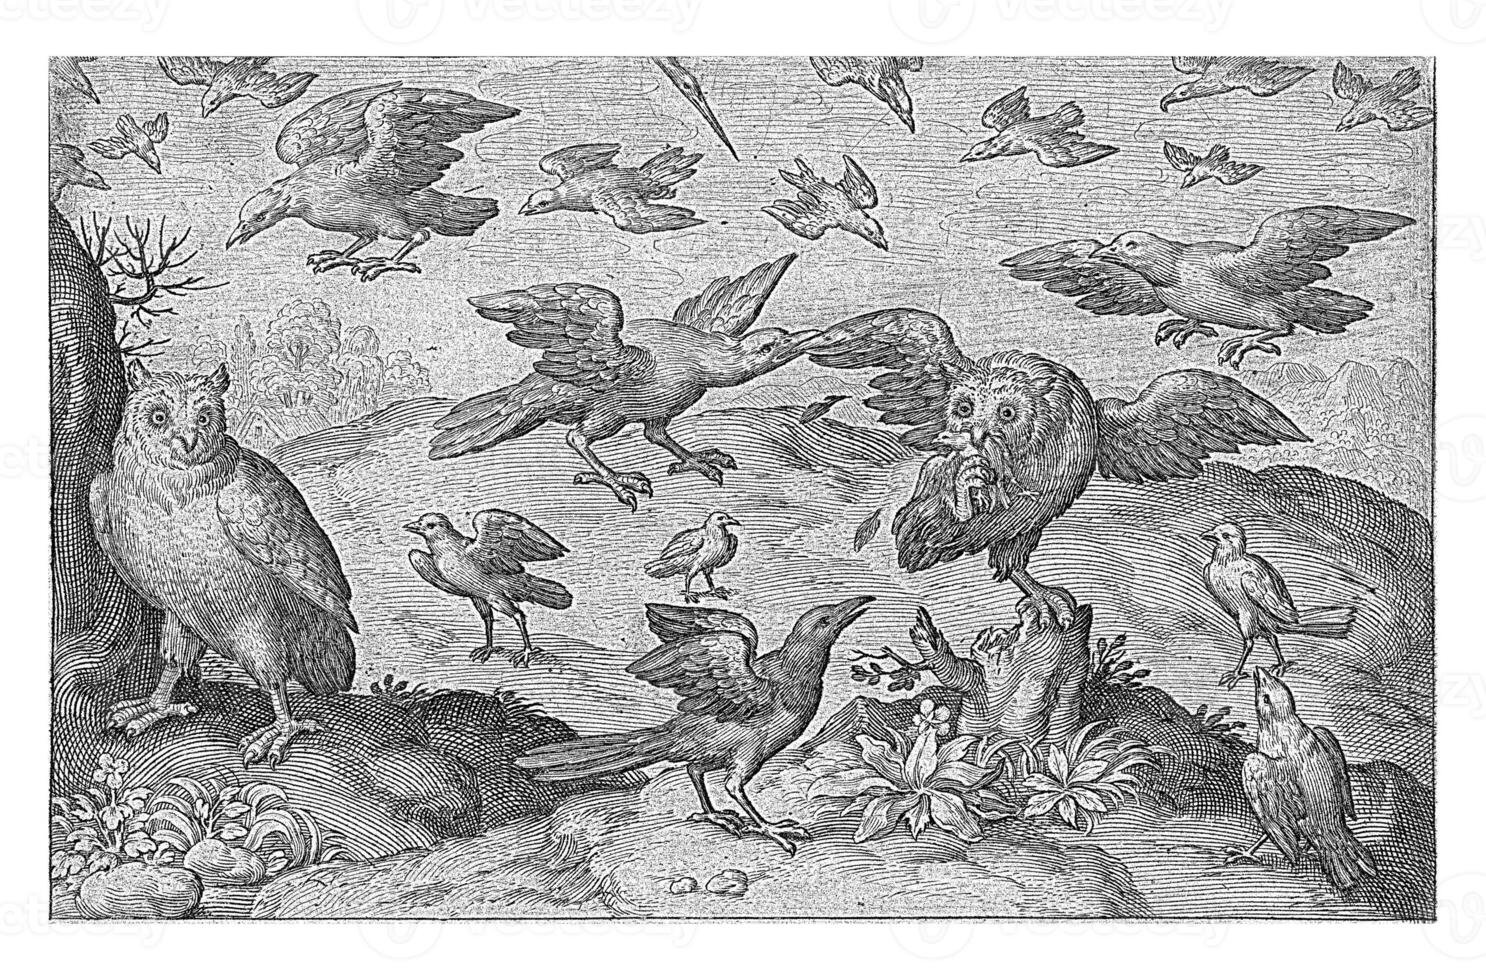 búho atacado con presa por otro aves, nicolas Delaware bruyn, 1594 foto